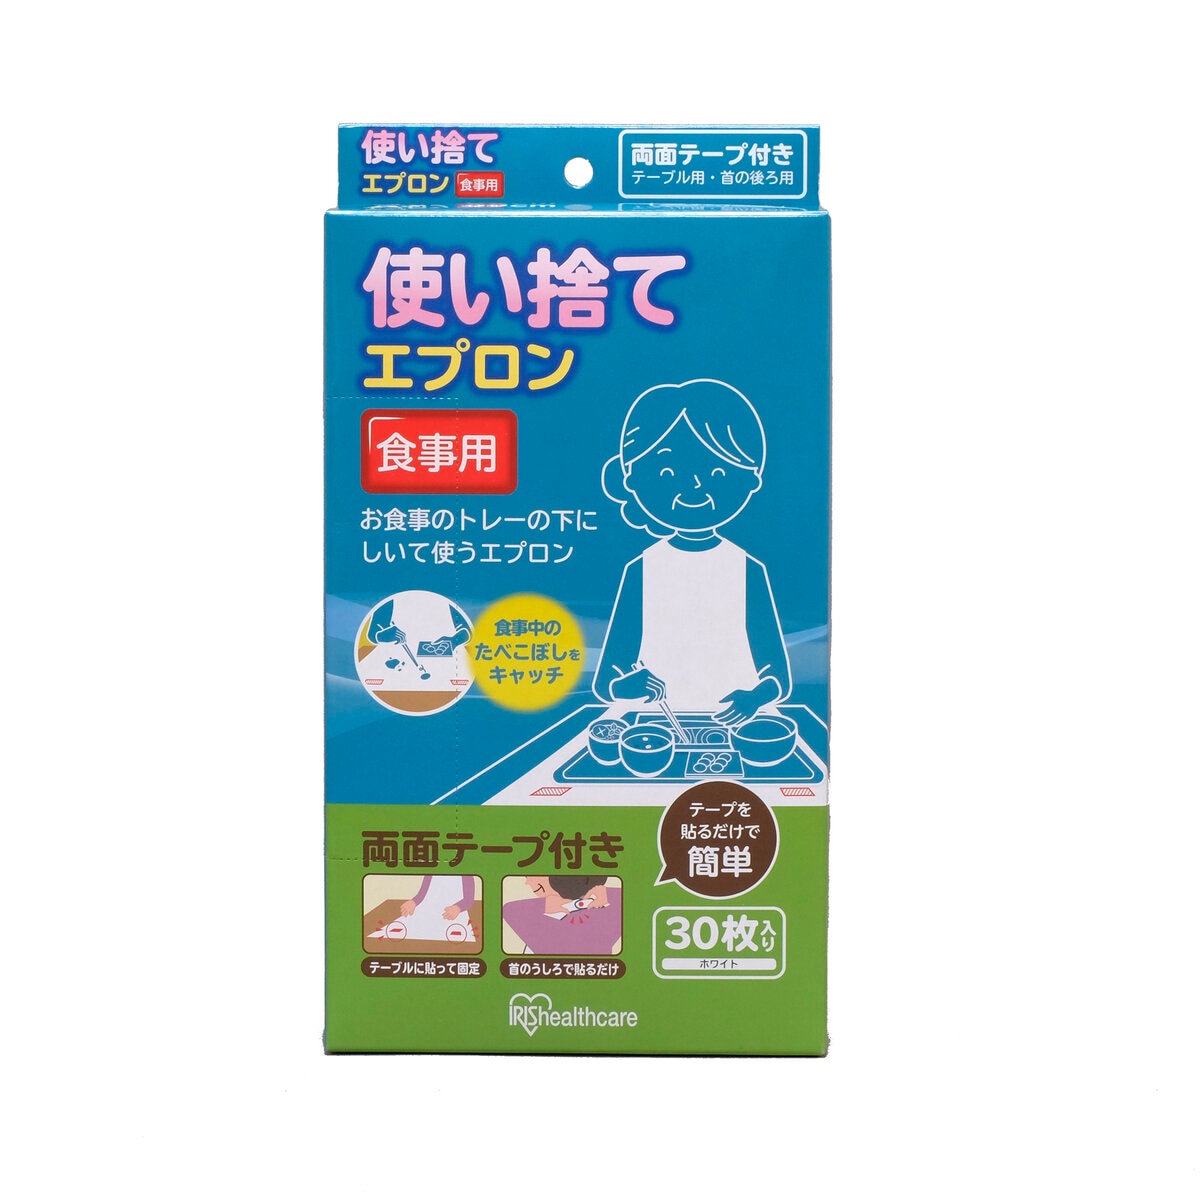 アイリスオーヤマ 使い捨てエプロン 食事用 30枚入り | Costco Japan